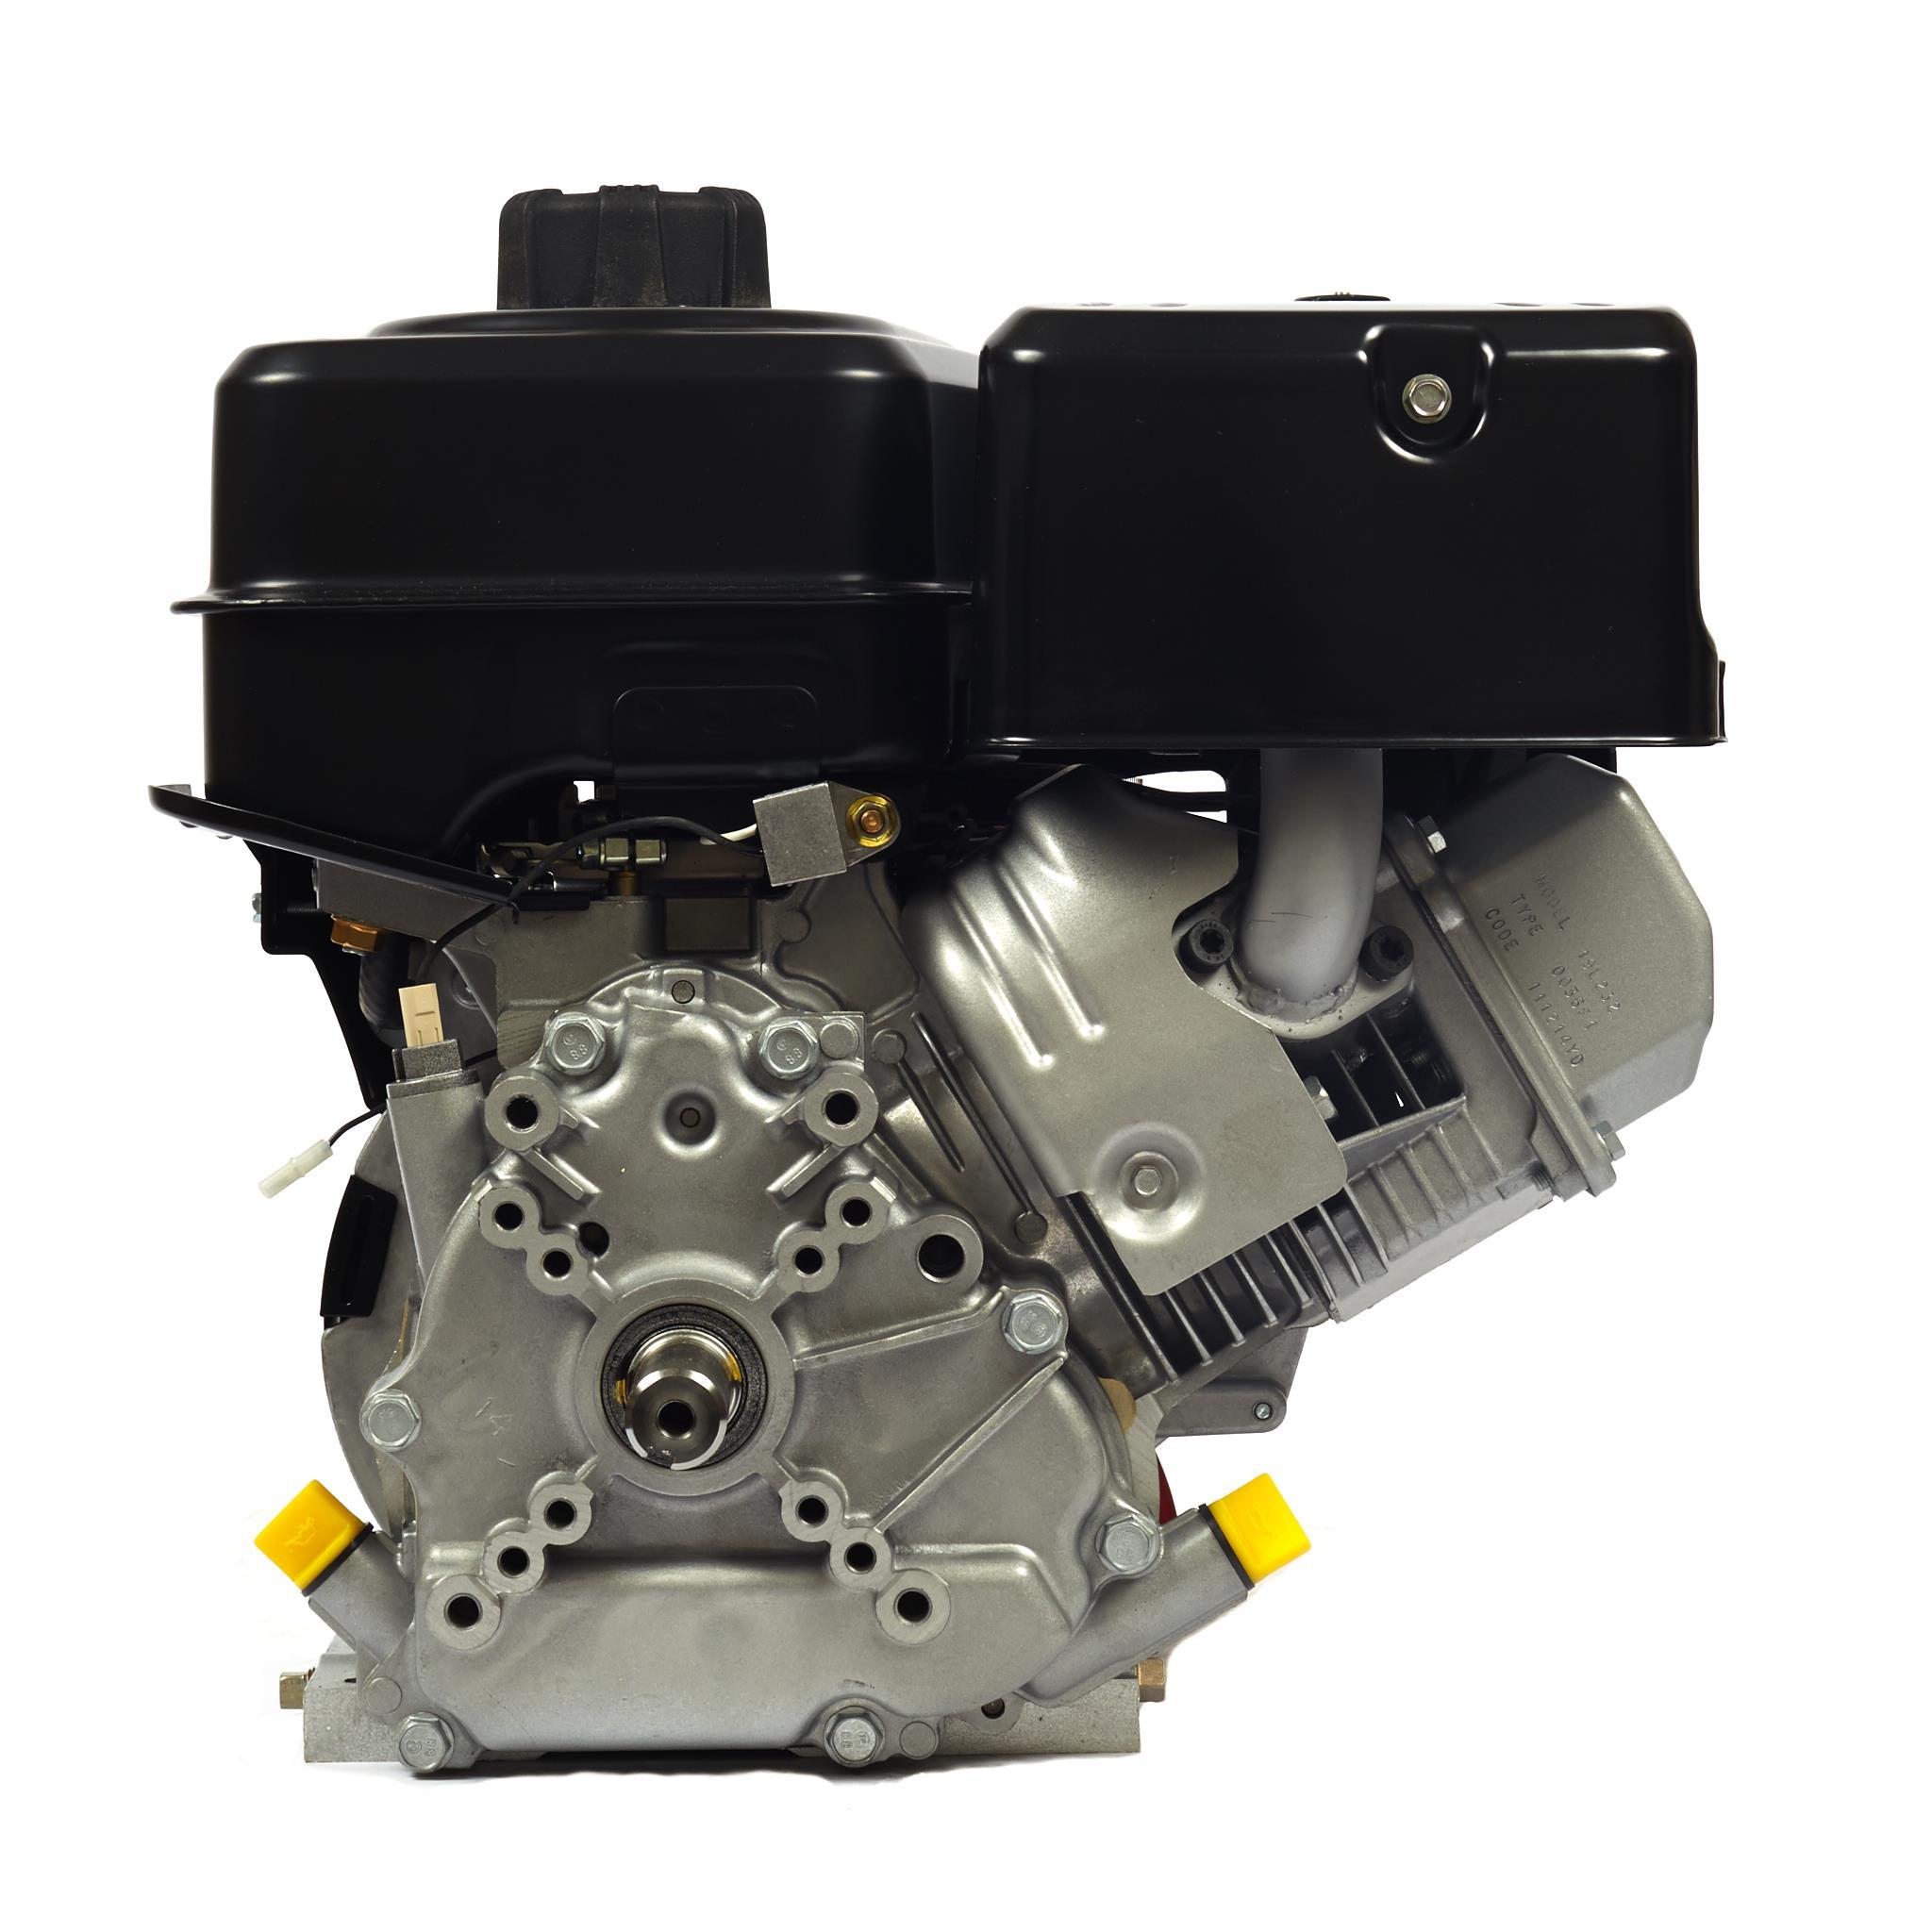 KOHLER NEW COURAGE XT-7 ENGINE MOTOR Vertical Shaft Model# XT173-0037